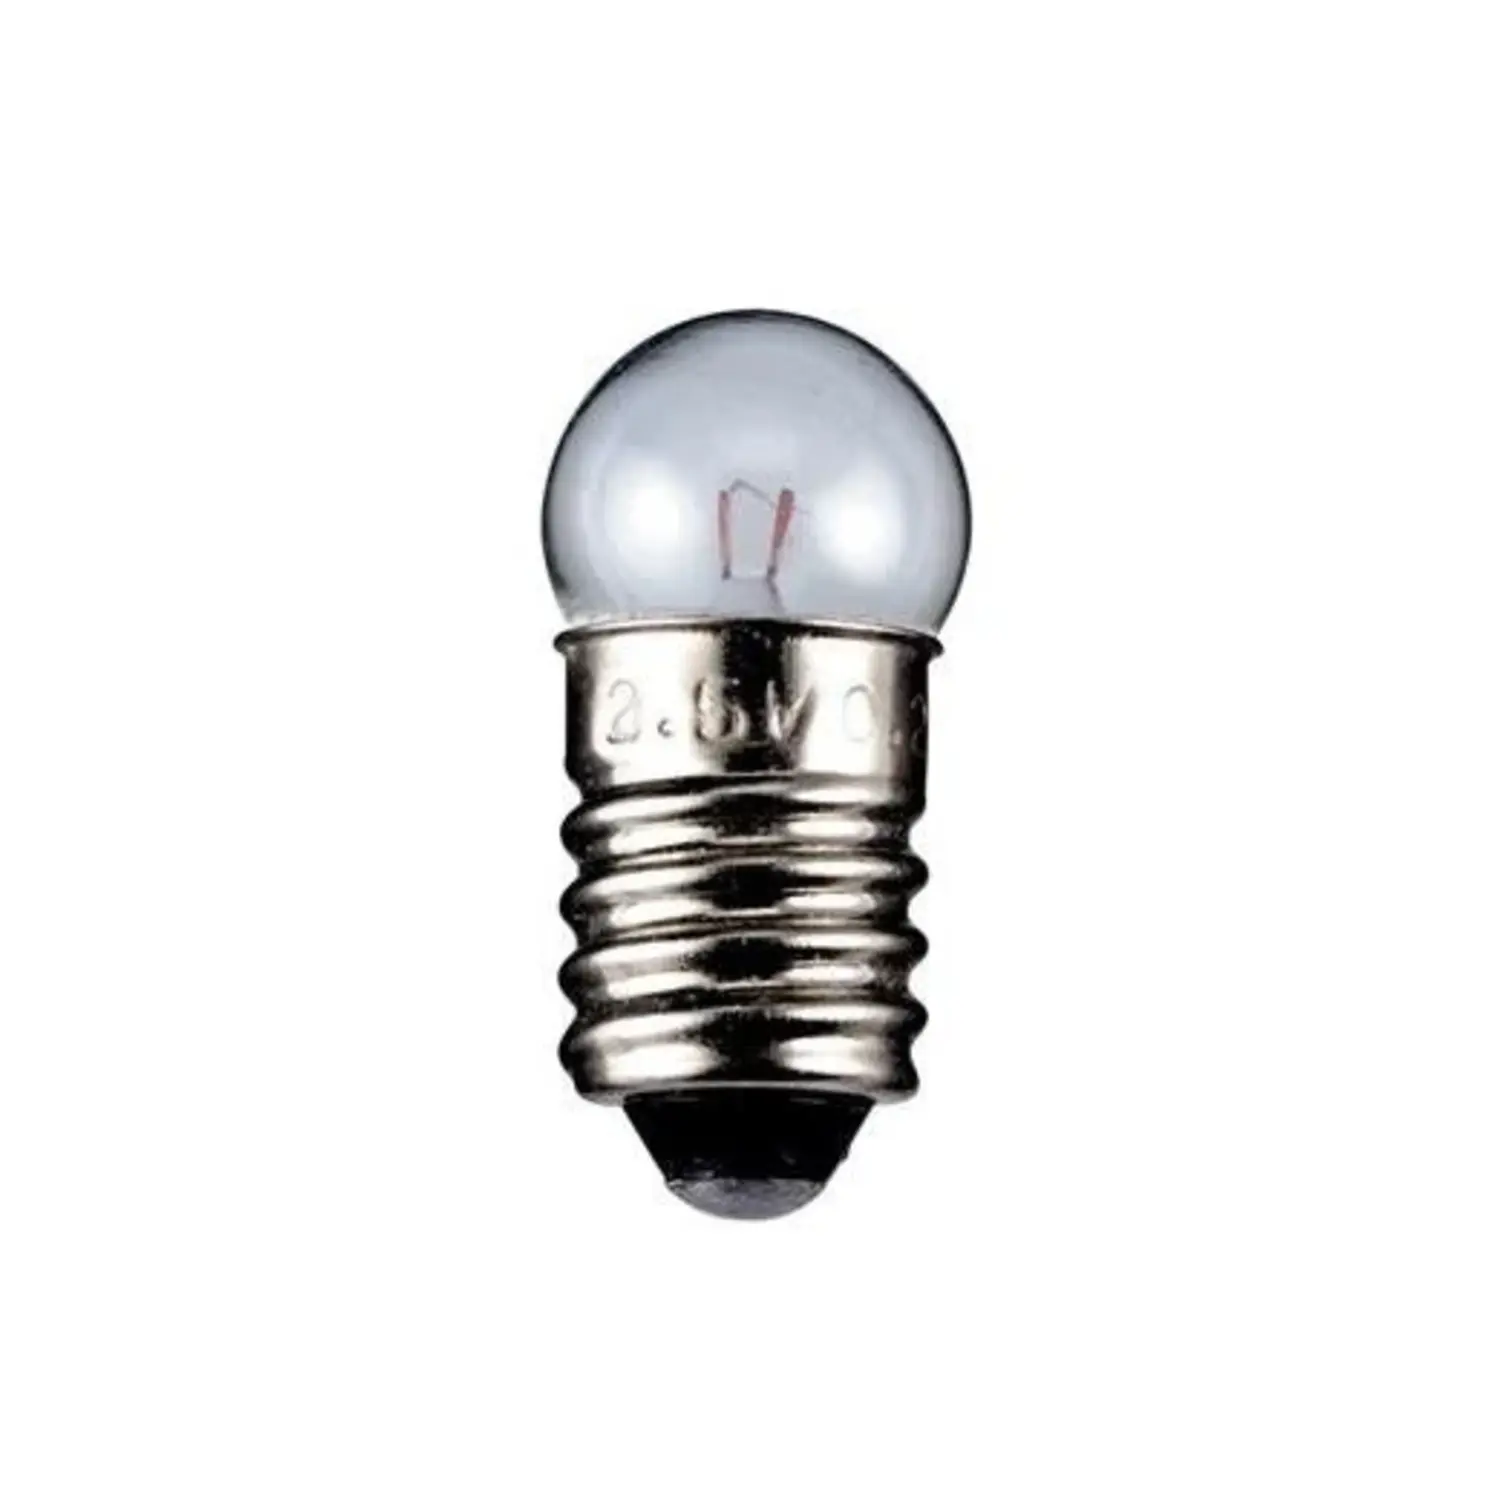 immagine del prodotto lampadina globulare sferetta chiara modellismo presepe e10 1,44 watt 4,8 volt